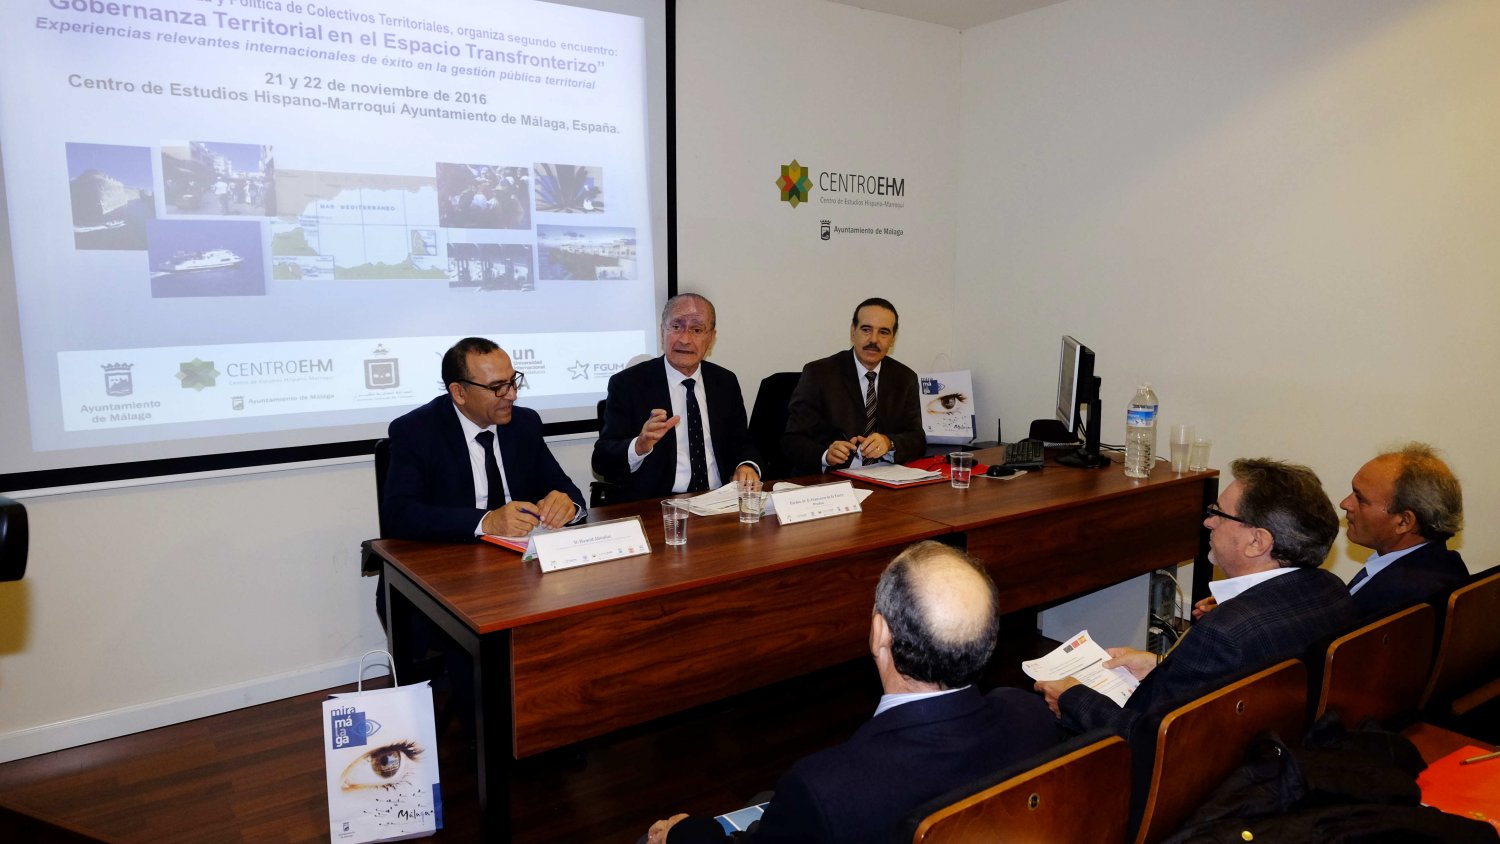 El Centro de Estudios Hispano-Marroquí organiza el segundo seminario sobre gobernanza territorial en el espacio transfronterizo